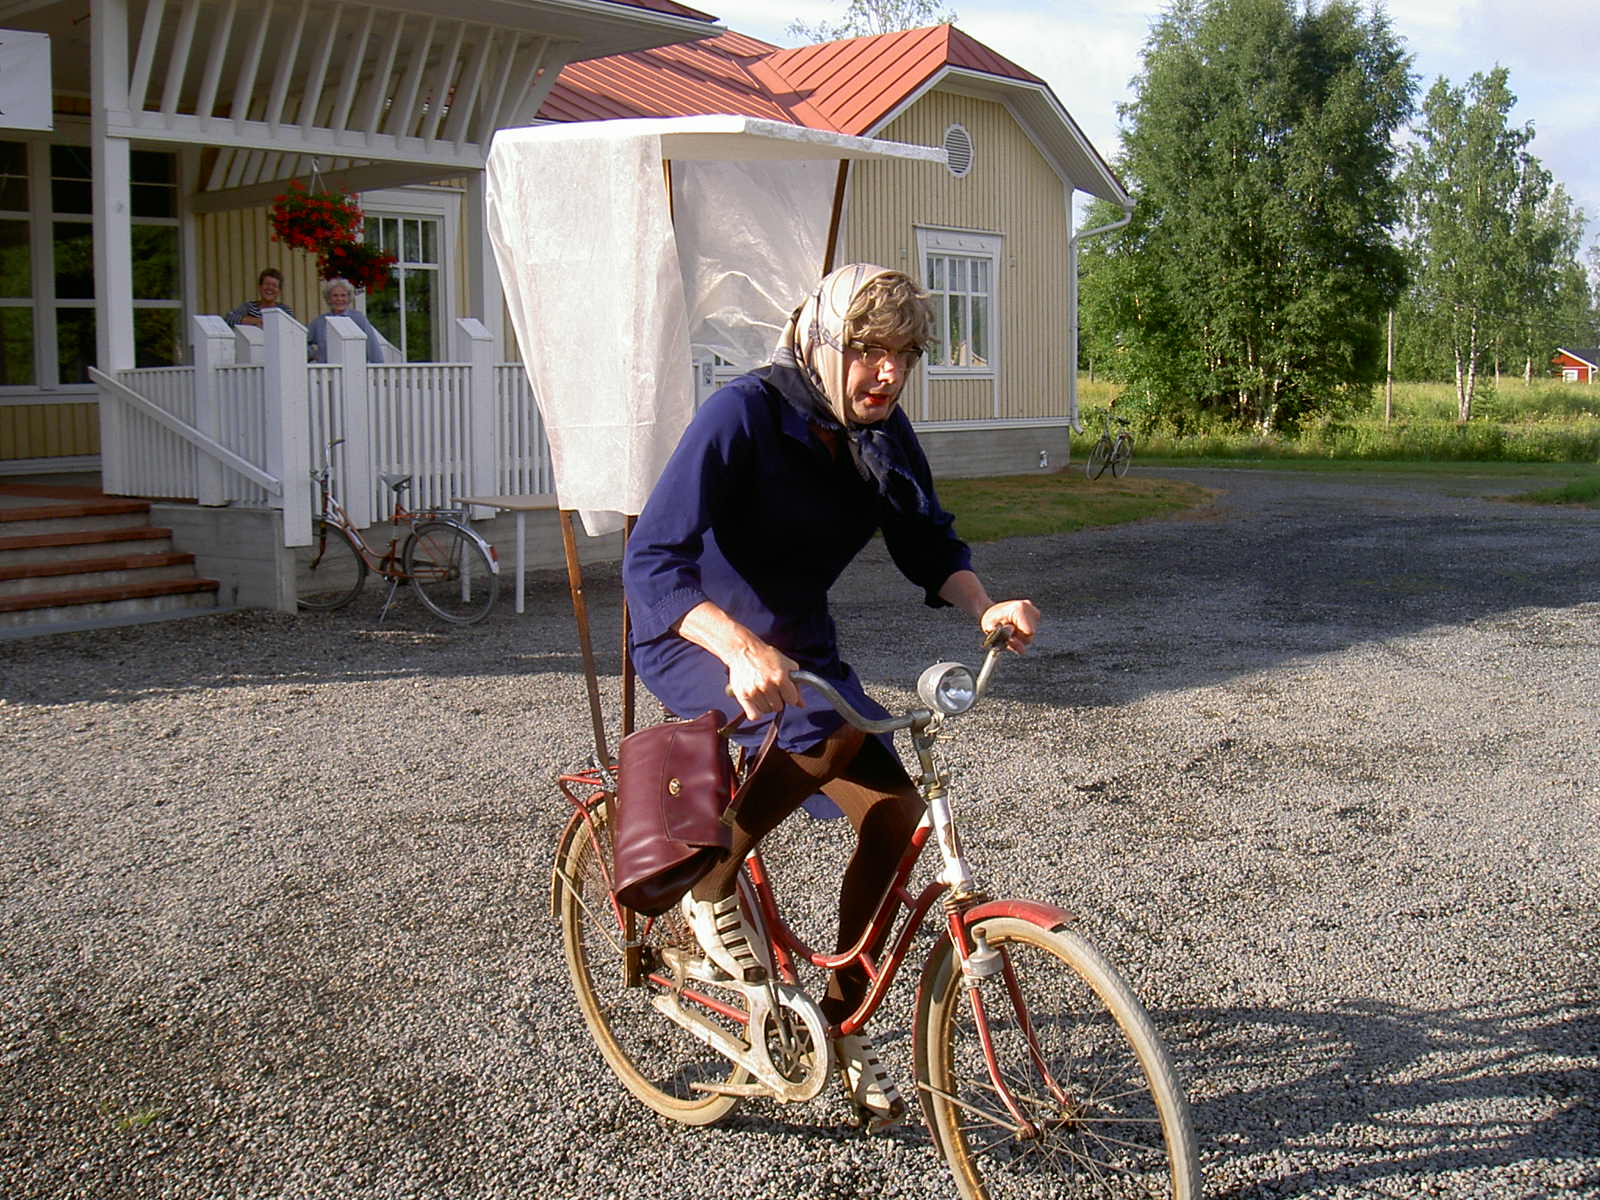 "Hulda från Klemetsänadan" alltså Mikael Nelson brukar ta sig igenom Majbolänken på lite olika sätt, i detta fall med ett riktigt "trampvagn". Året är 2005.